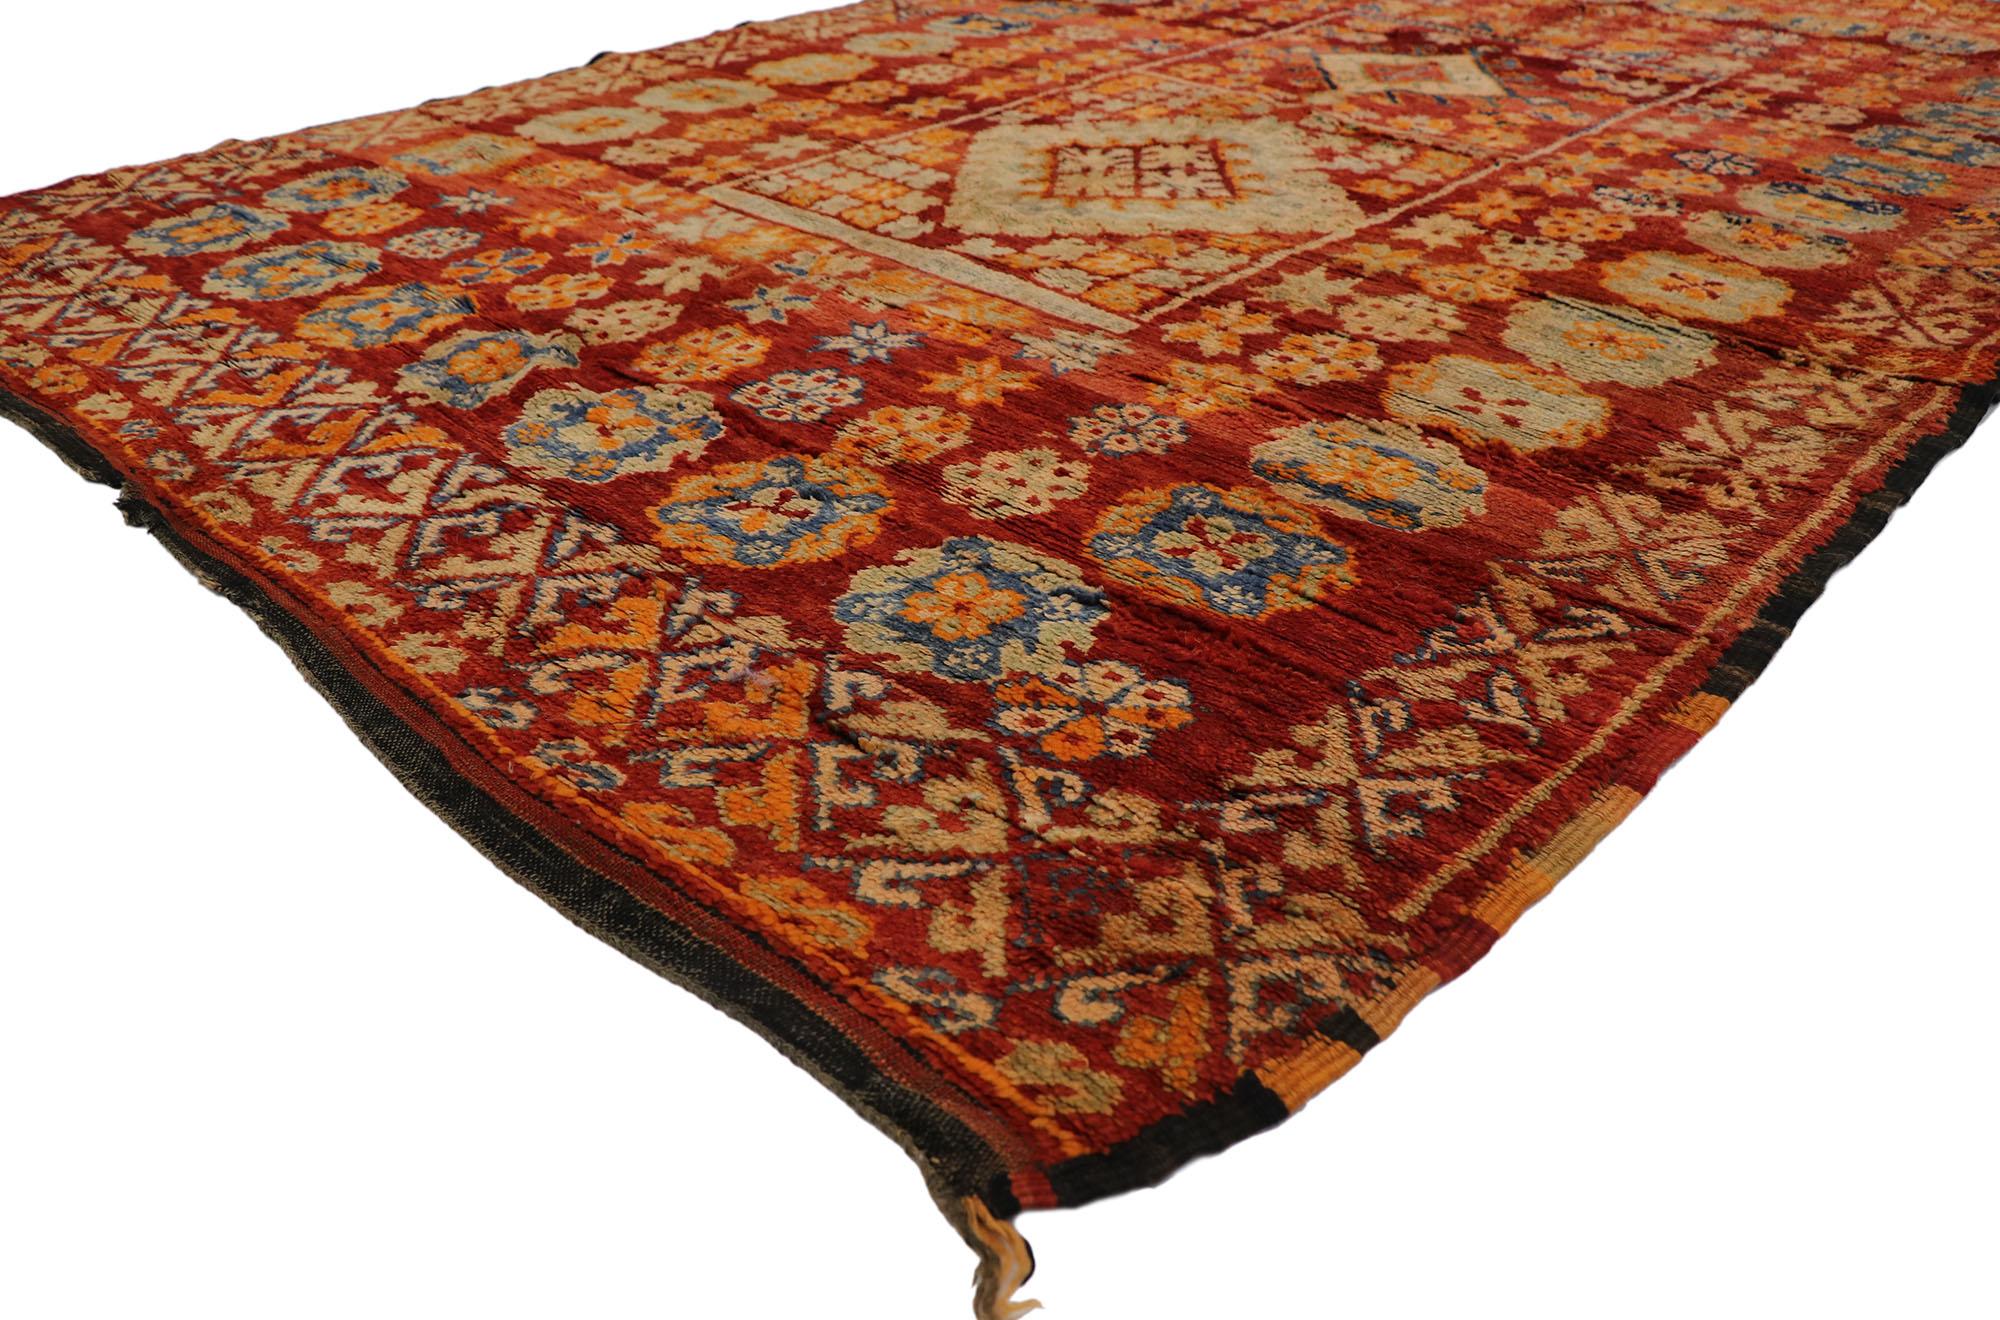 21489 Tapis marocain berbère vintage, 06'04 x 09'06.
Ce tapis marocain vintage en laine nouée à la main est une vision captivante de la beauté du tissage. Il dégage un charme nomade avec des détails et des textures incroyables. Le design tribal et